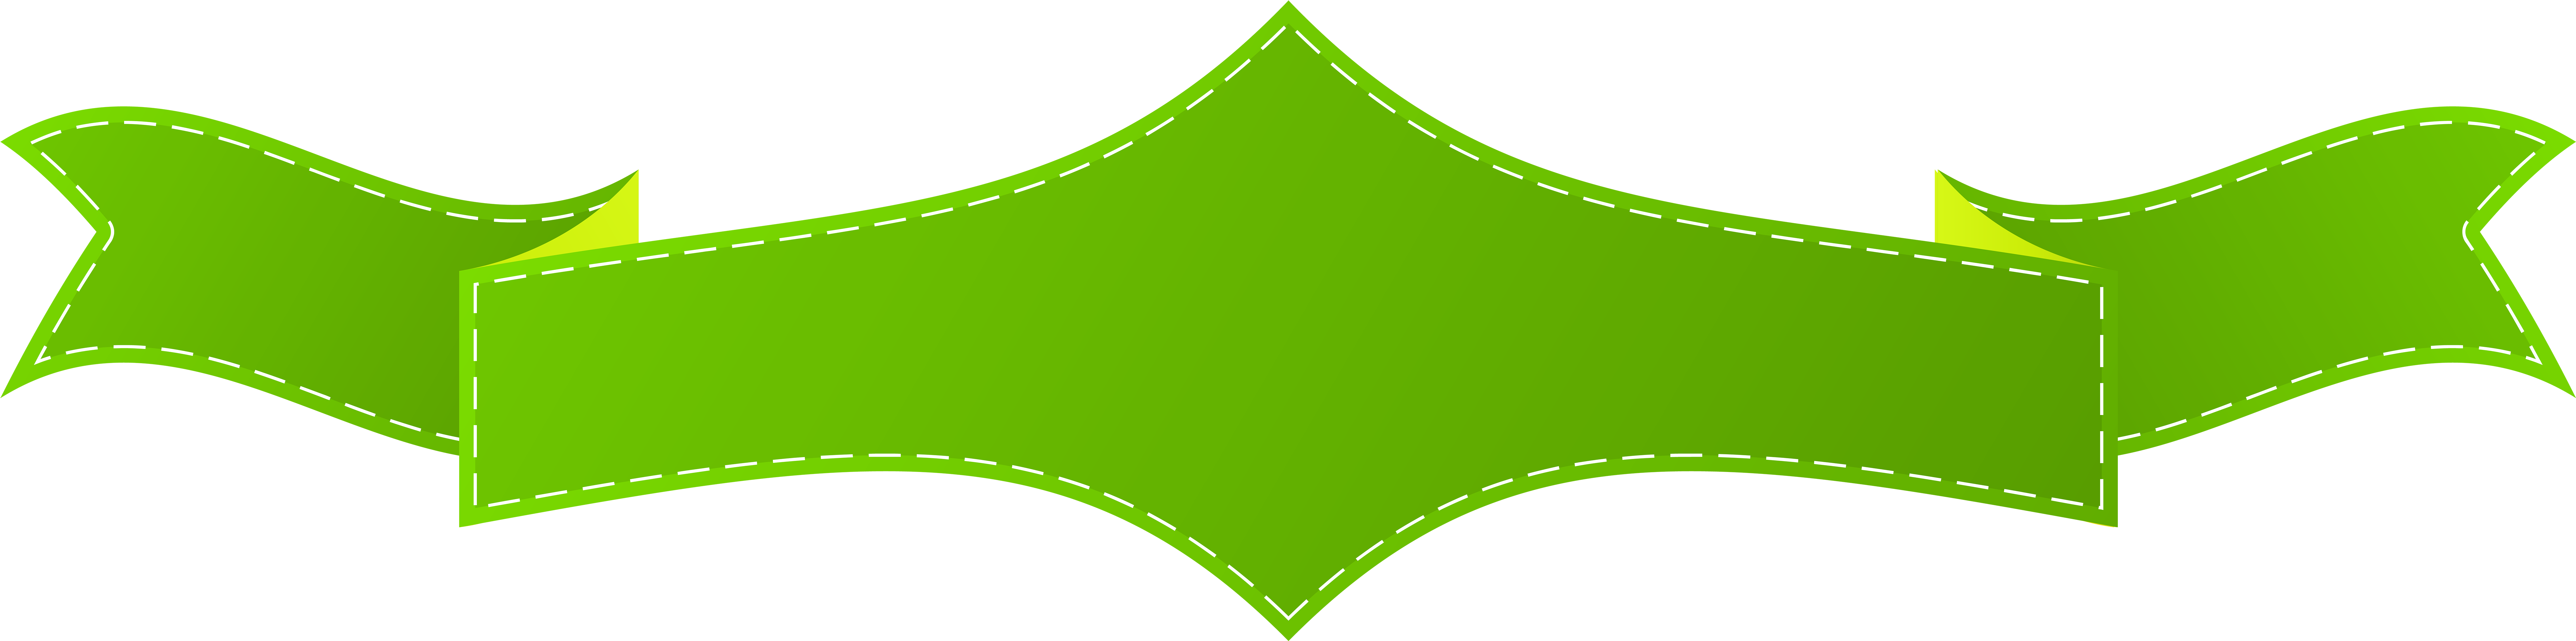 Green Art Banner Transparent Png Clip Art Imageu200b - Green Ribbon Banner Png (8000x2116)